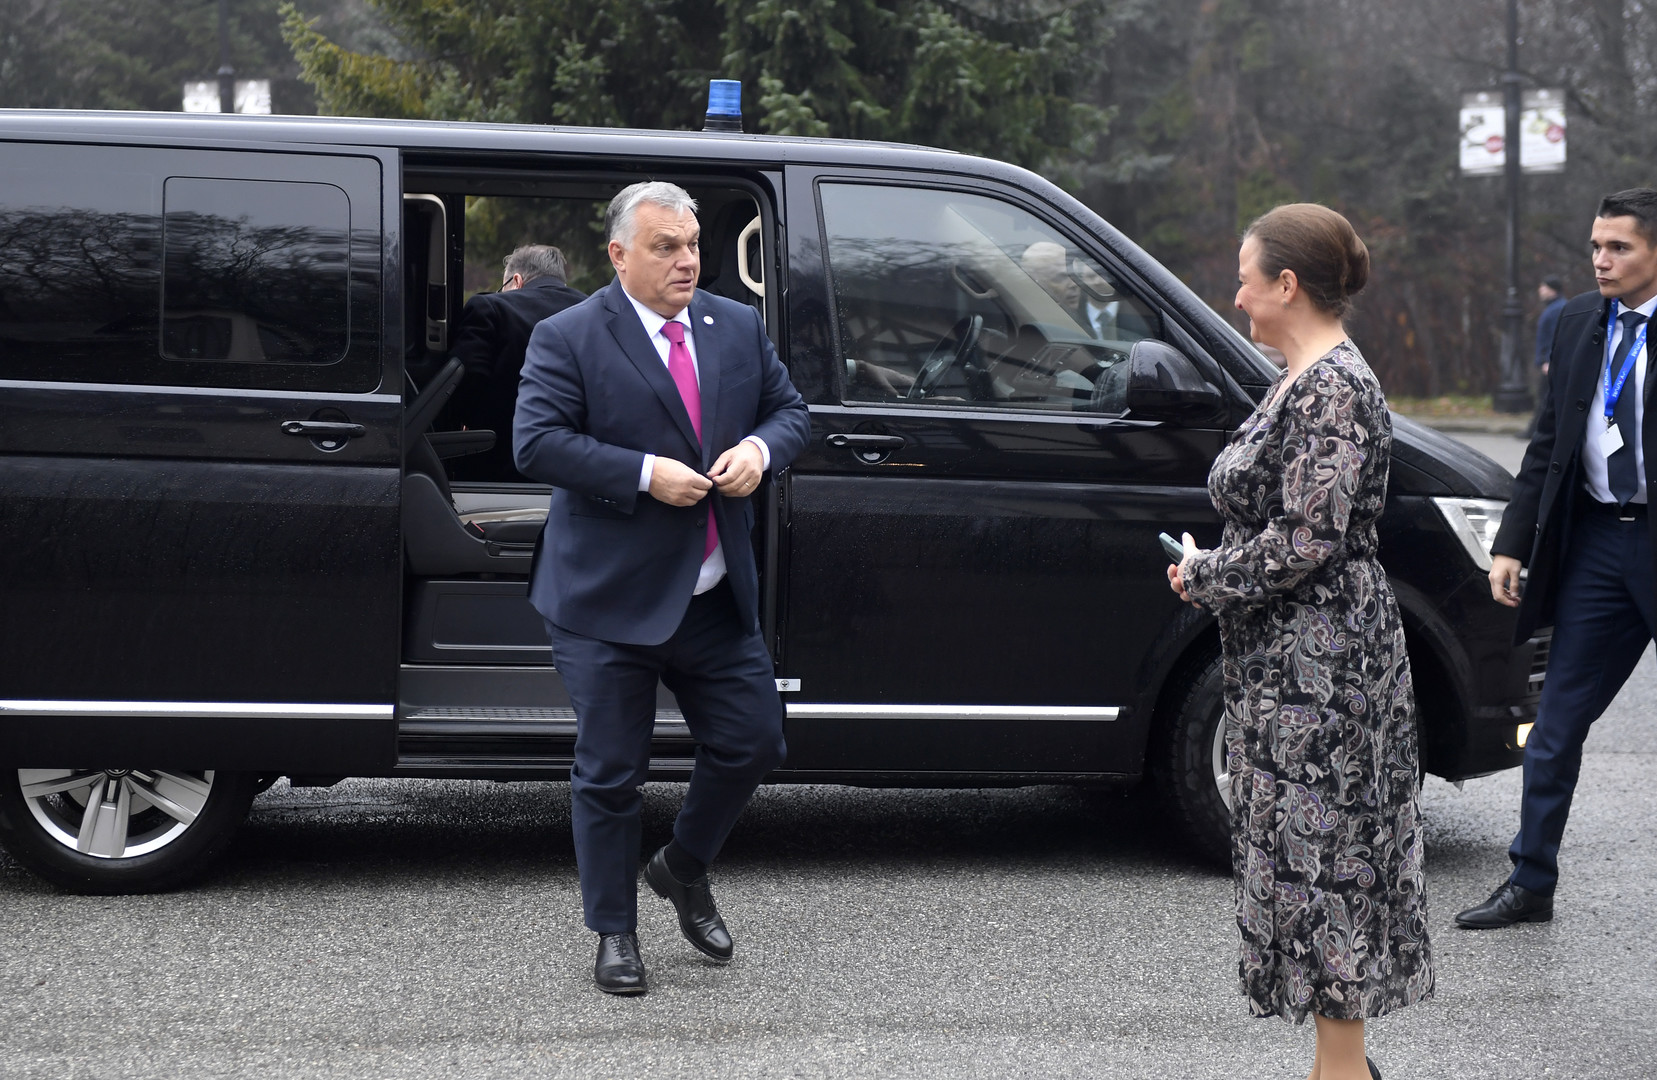 FOTÓK: Érkeznek a V4-ek miniszterelnökei a kassai csúcstalálkozóra